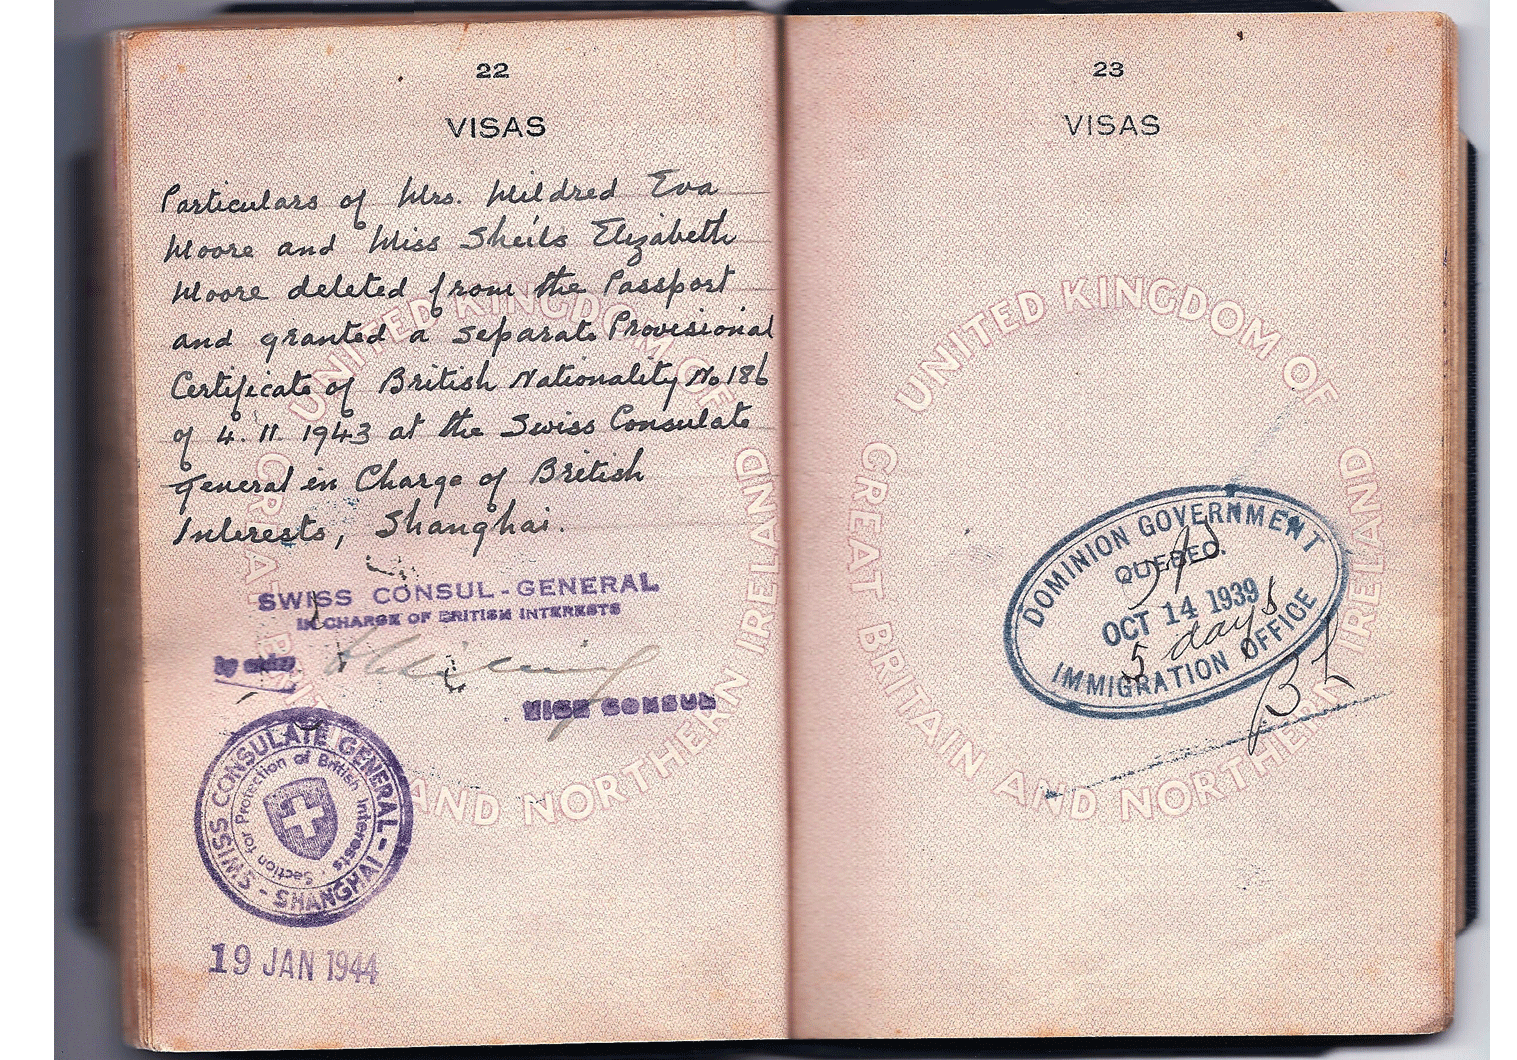 WW2 Swiss protection document